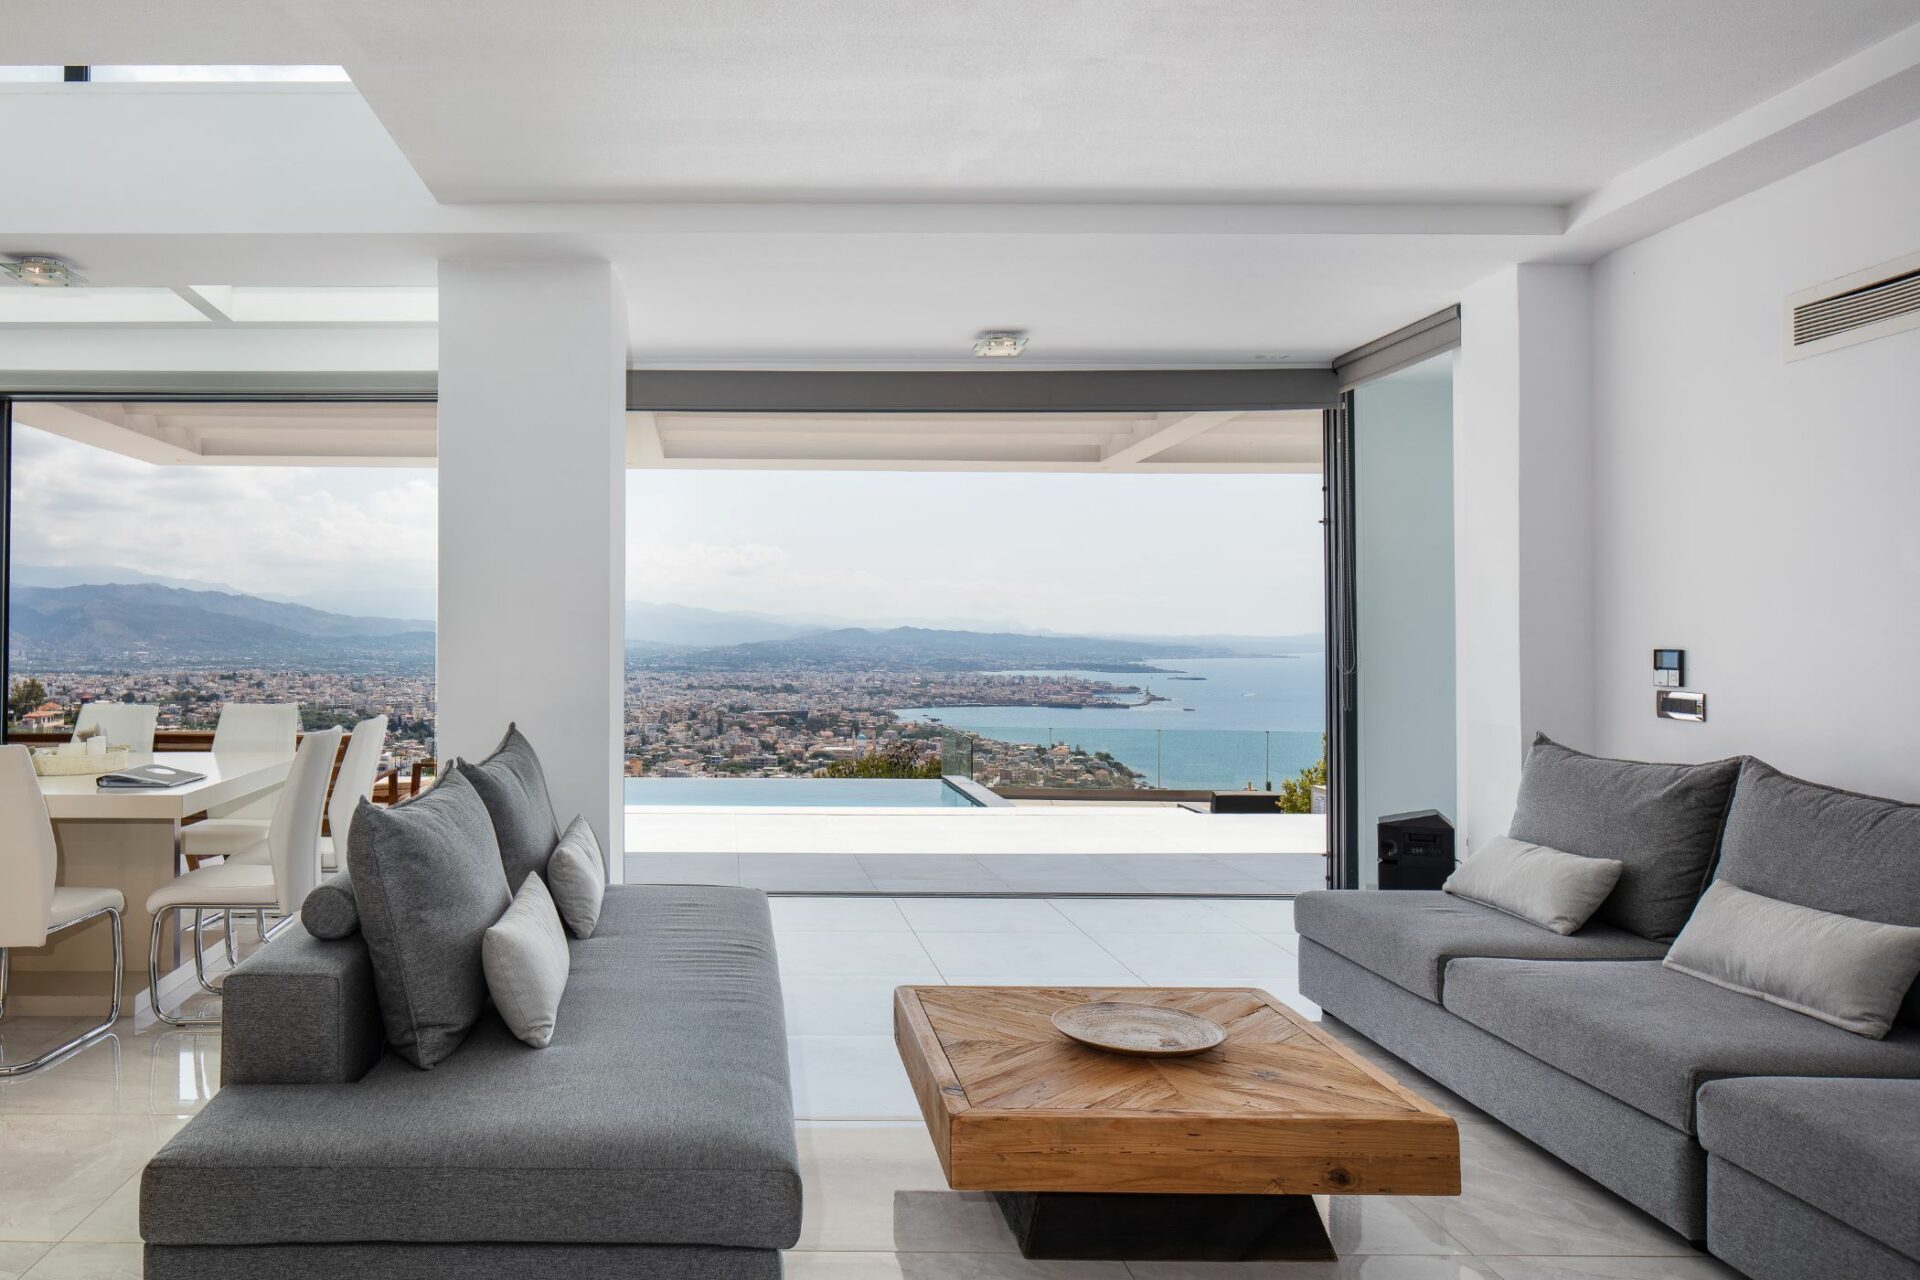 Bay Residence Luxus Ferienhaus Kreta Griechenland Wohnzimmer Mit Meerblick